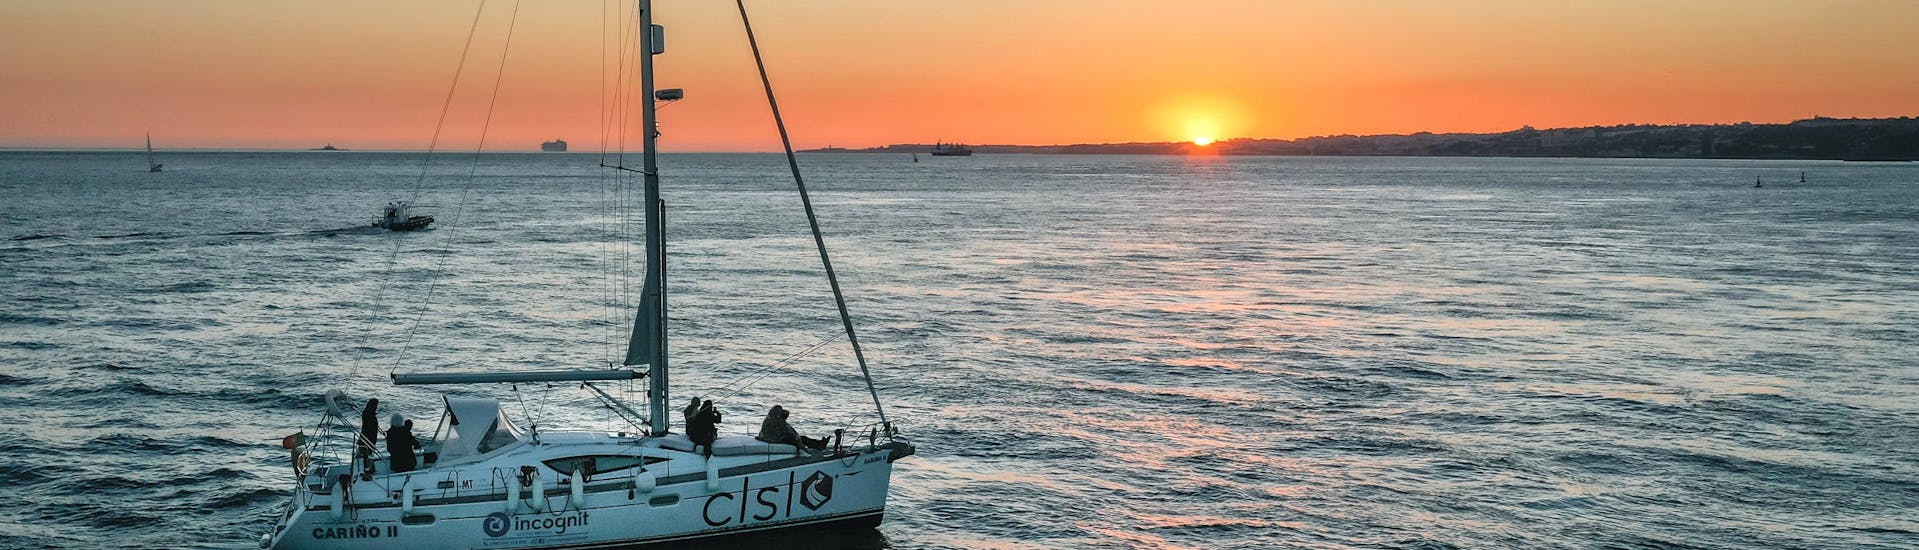 Unser Boot auf dem Tajo während einer Segelbootfahrt bei Sonnenuntergang mit Enjoy Tagus.